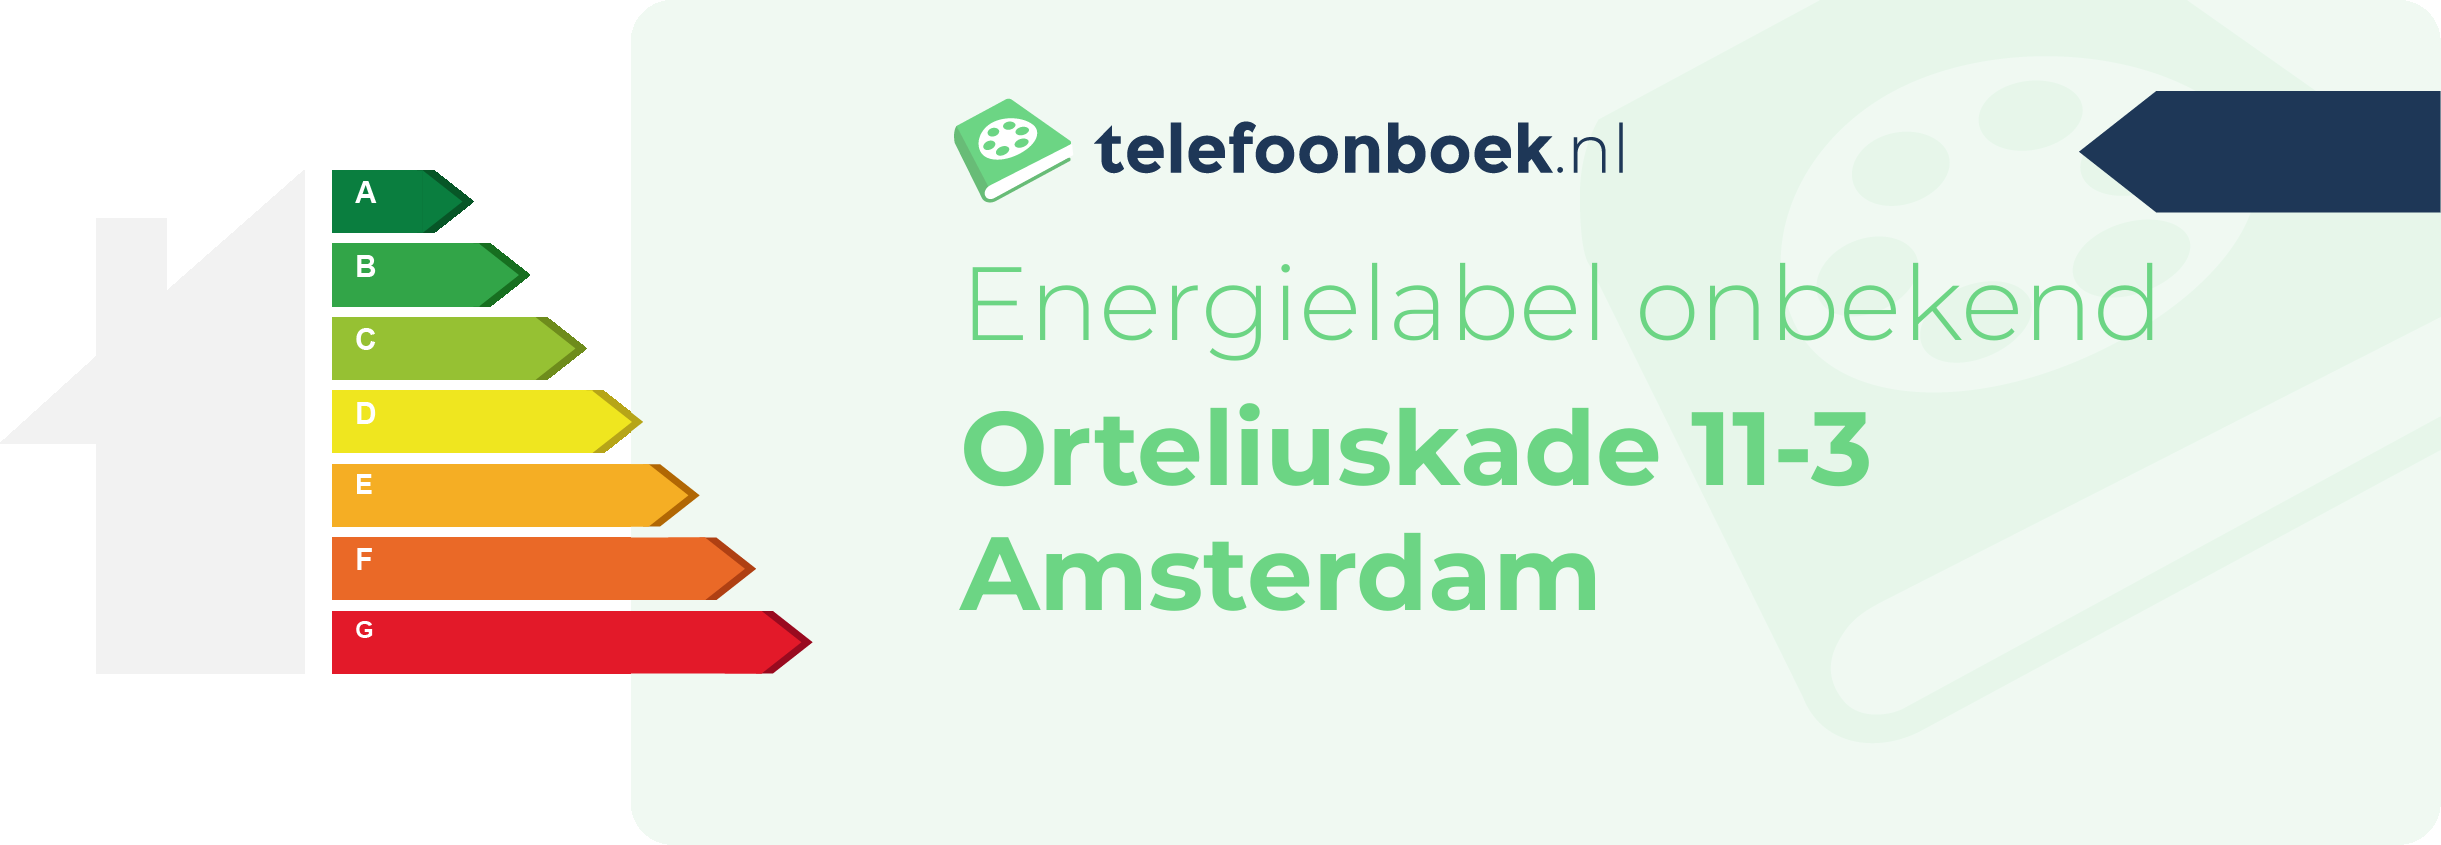 Energielabel Orteliuskade 11-3 Amsterdam